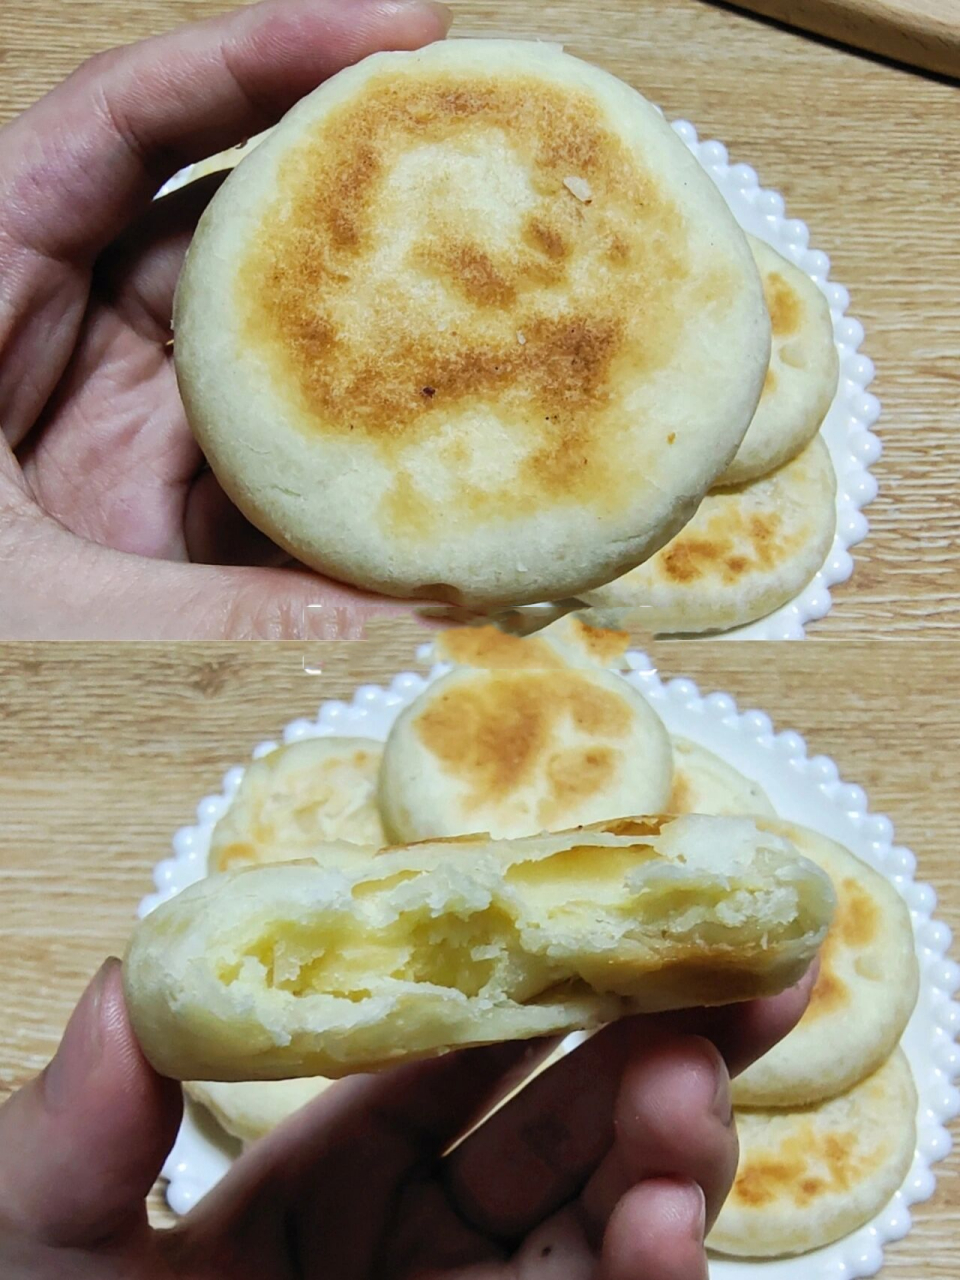 这款绿豆酥饼简直是懒人福音,做法简化到极致,食材也很简单,做出来